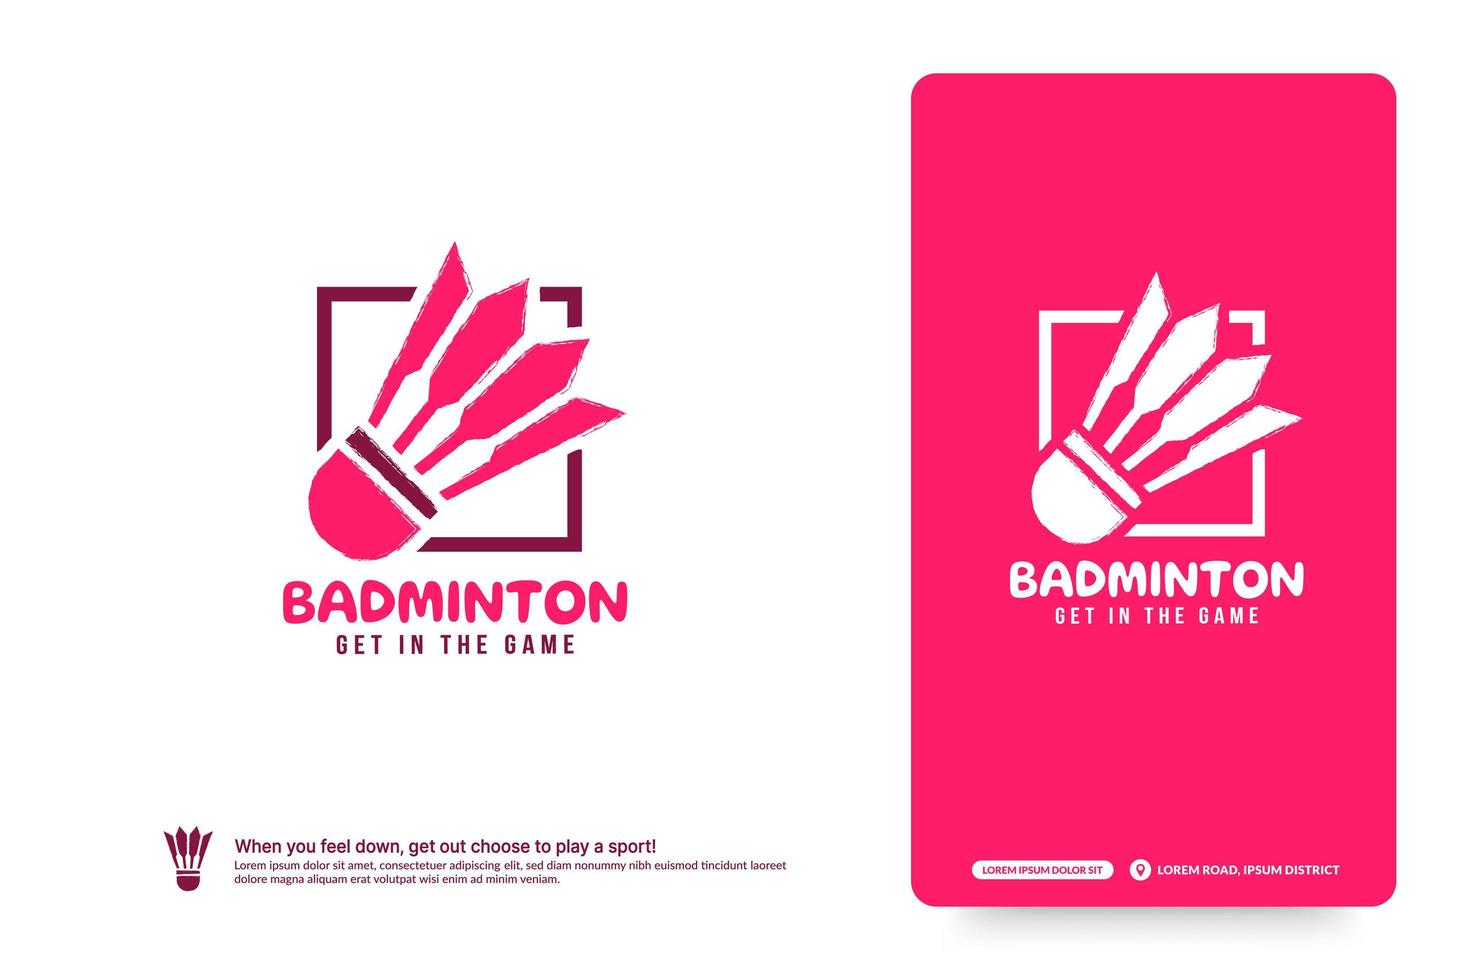 modello di progettazione del logo del club di badminton, concetto di logo dei tornei di badminton. identità della squadra di badminton isolata su sfondo bianco, illustrazioni vettoriali di disegno astratto di simbolo di sport